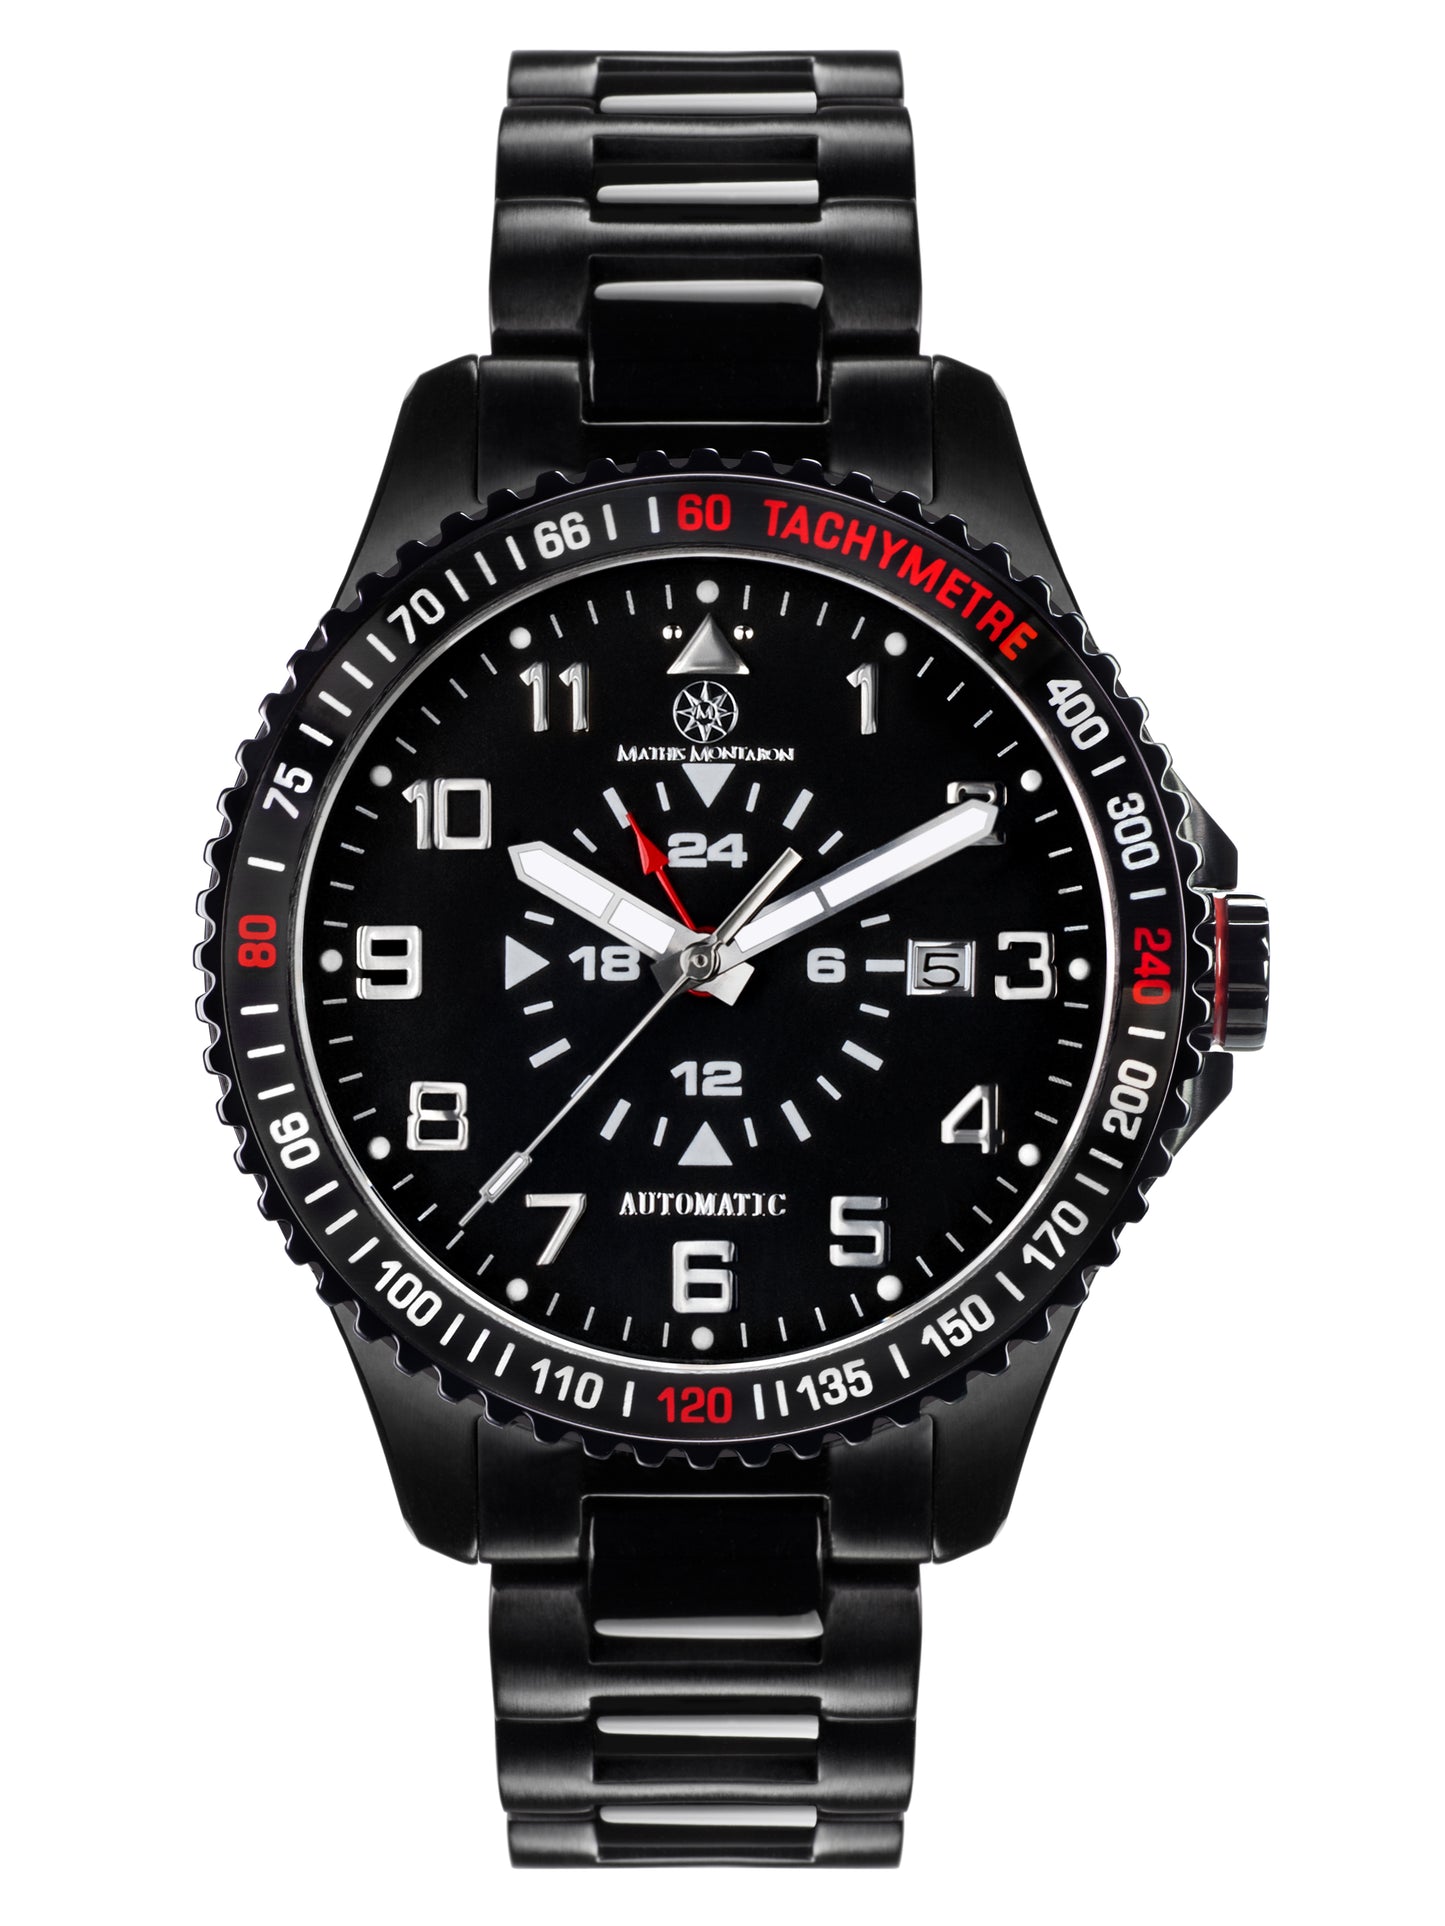 Automatic watches — Pionnier — Mathis Montabon — IP schwarz